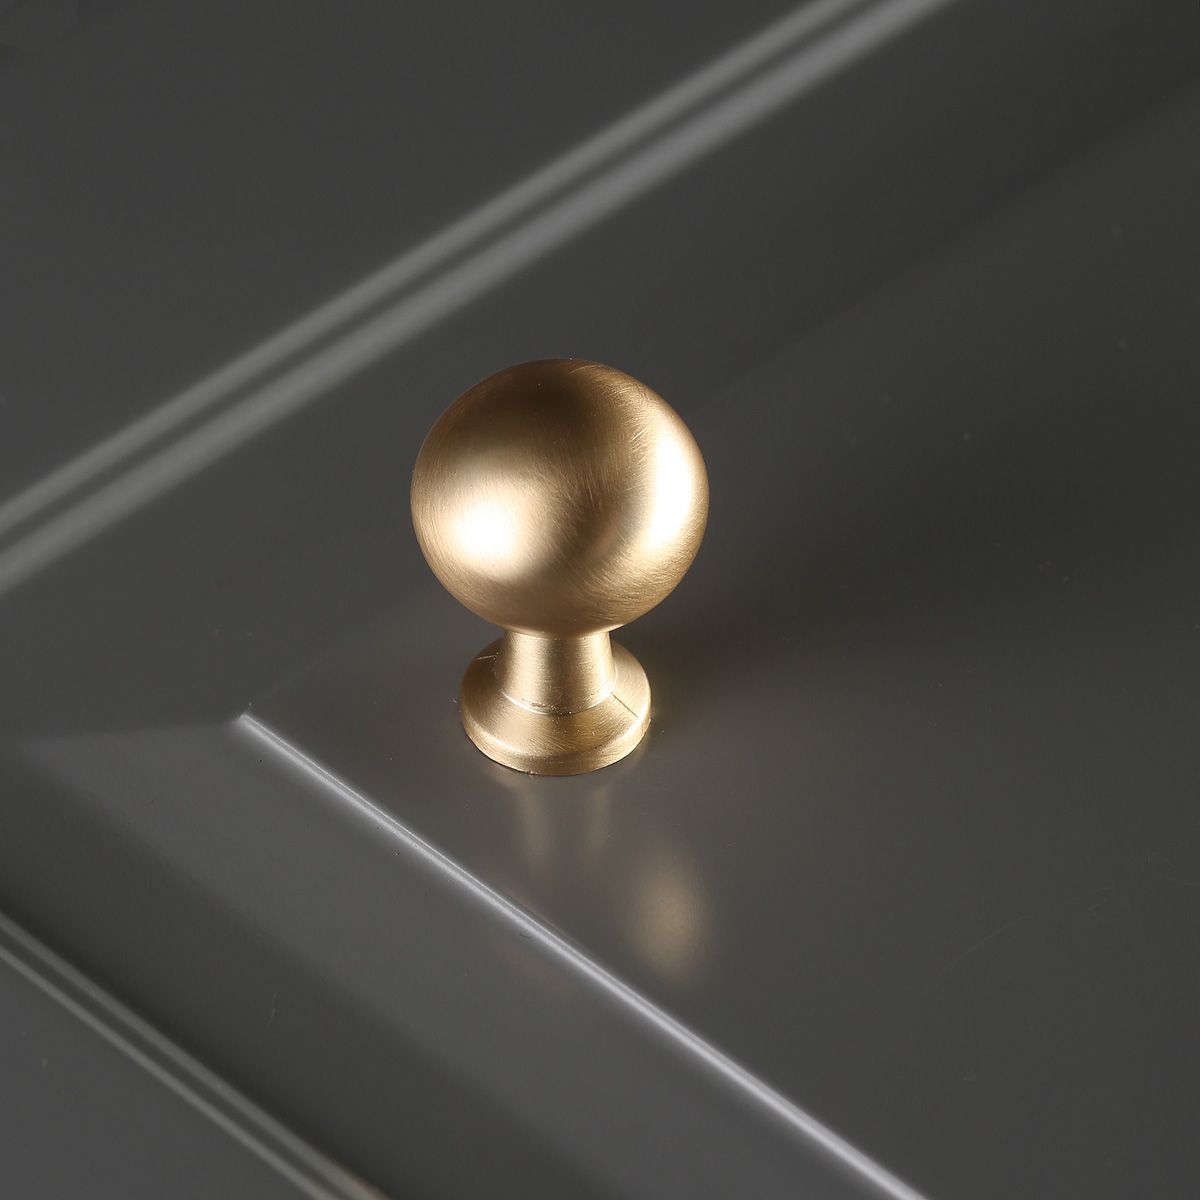 Ручка мебельная кнопка матовое золото GZ-NORD-1-18 GTV / 69893 / оптом и в розницу / мебельная фурнитура "ЛАВР"